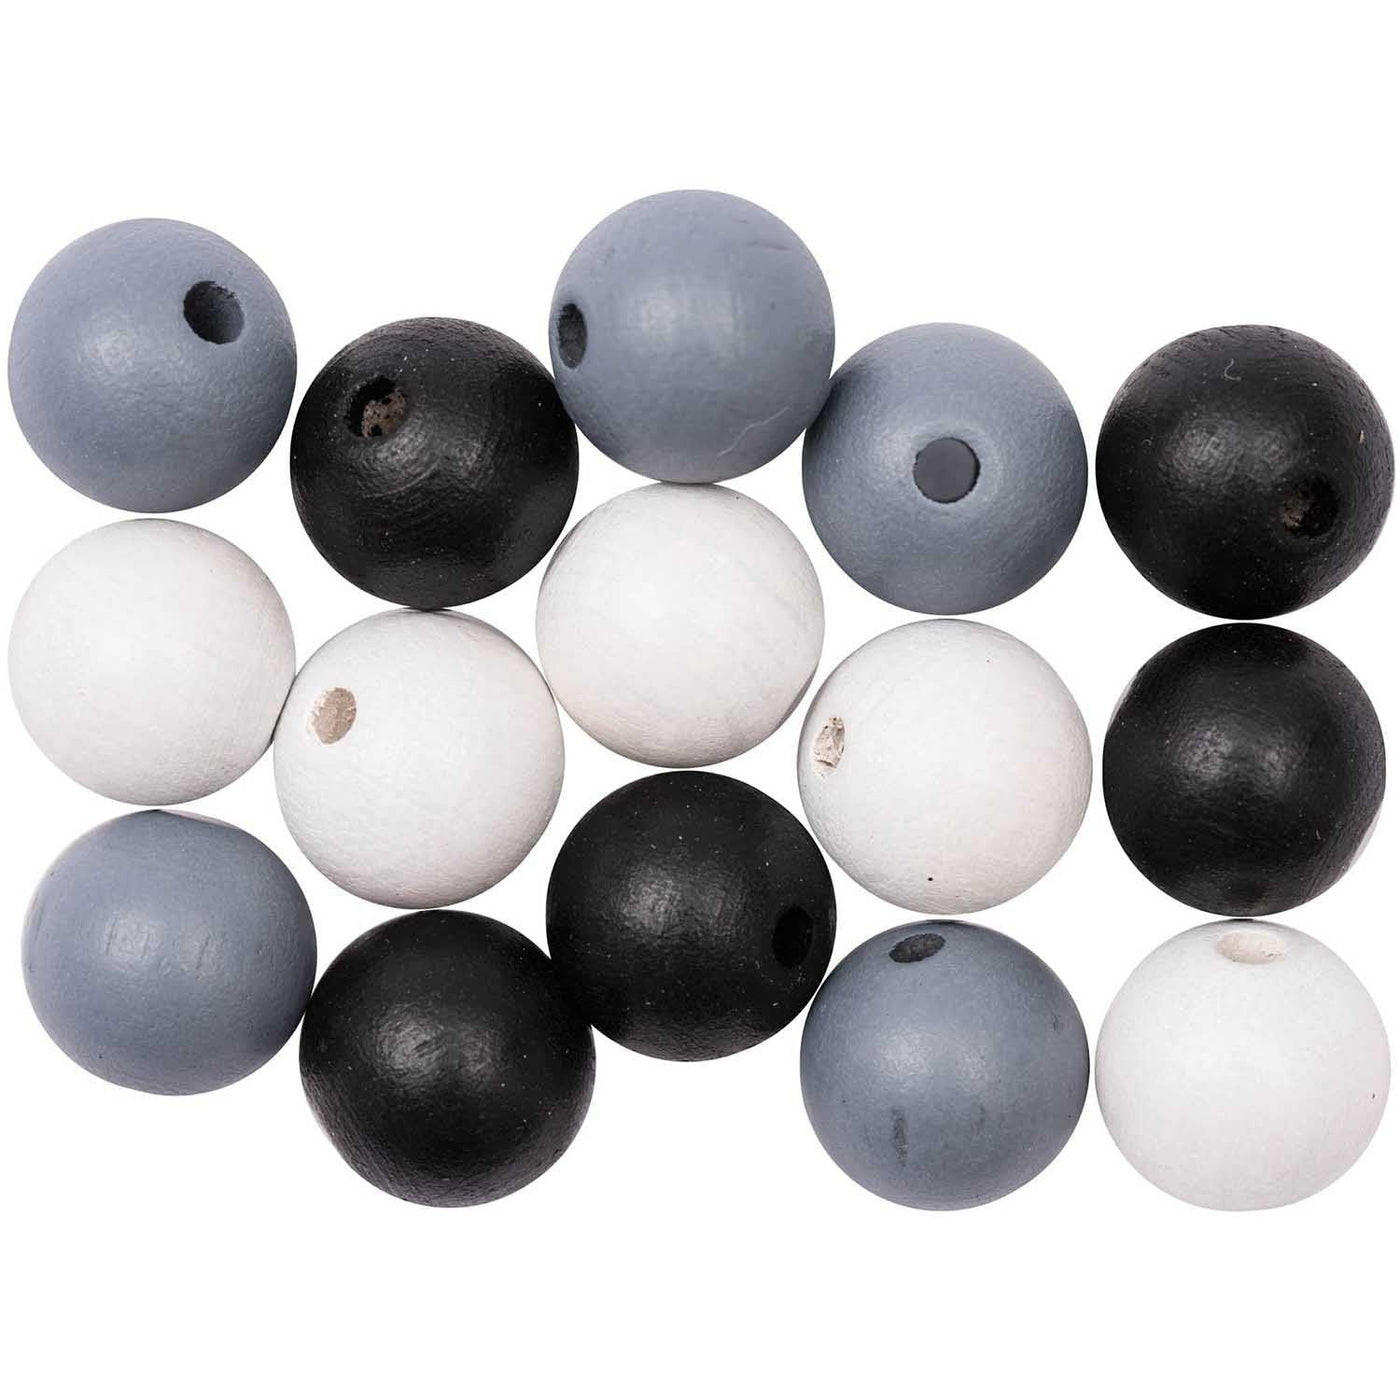 Wooden Beads - Black & White - 1.2cm - Pack of 15